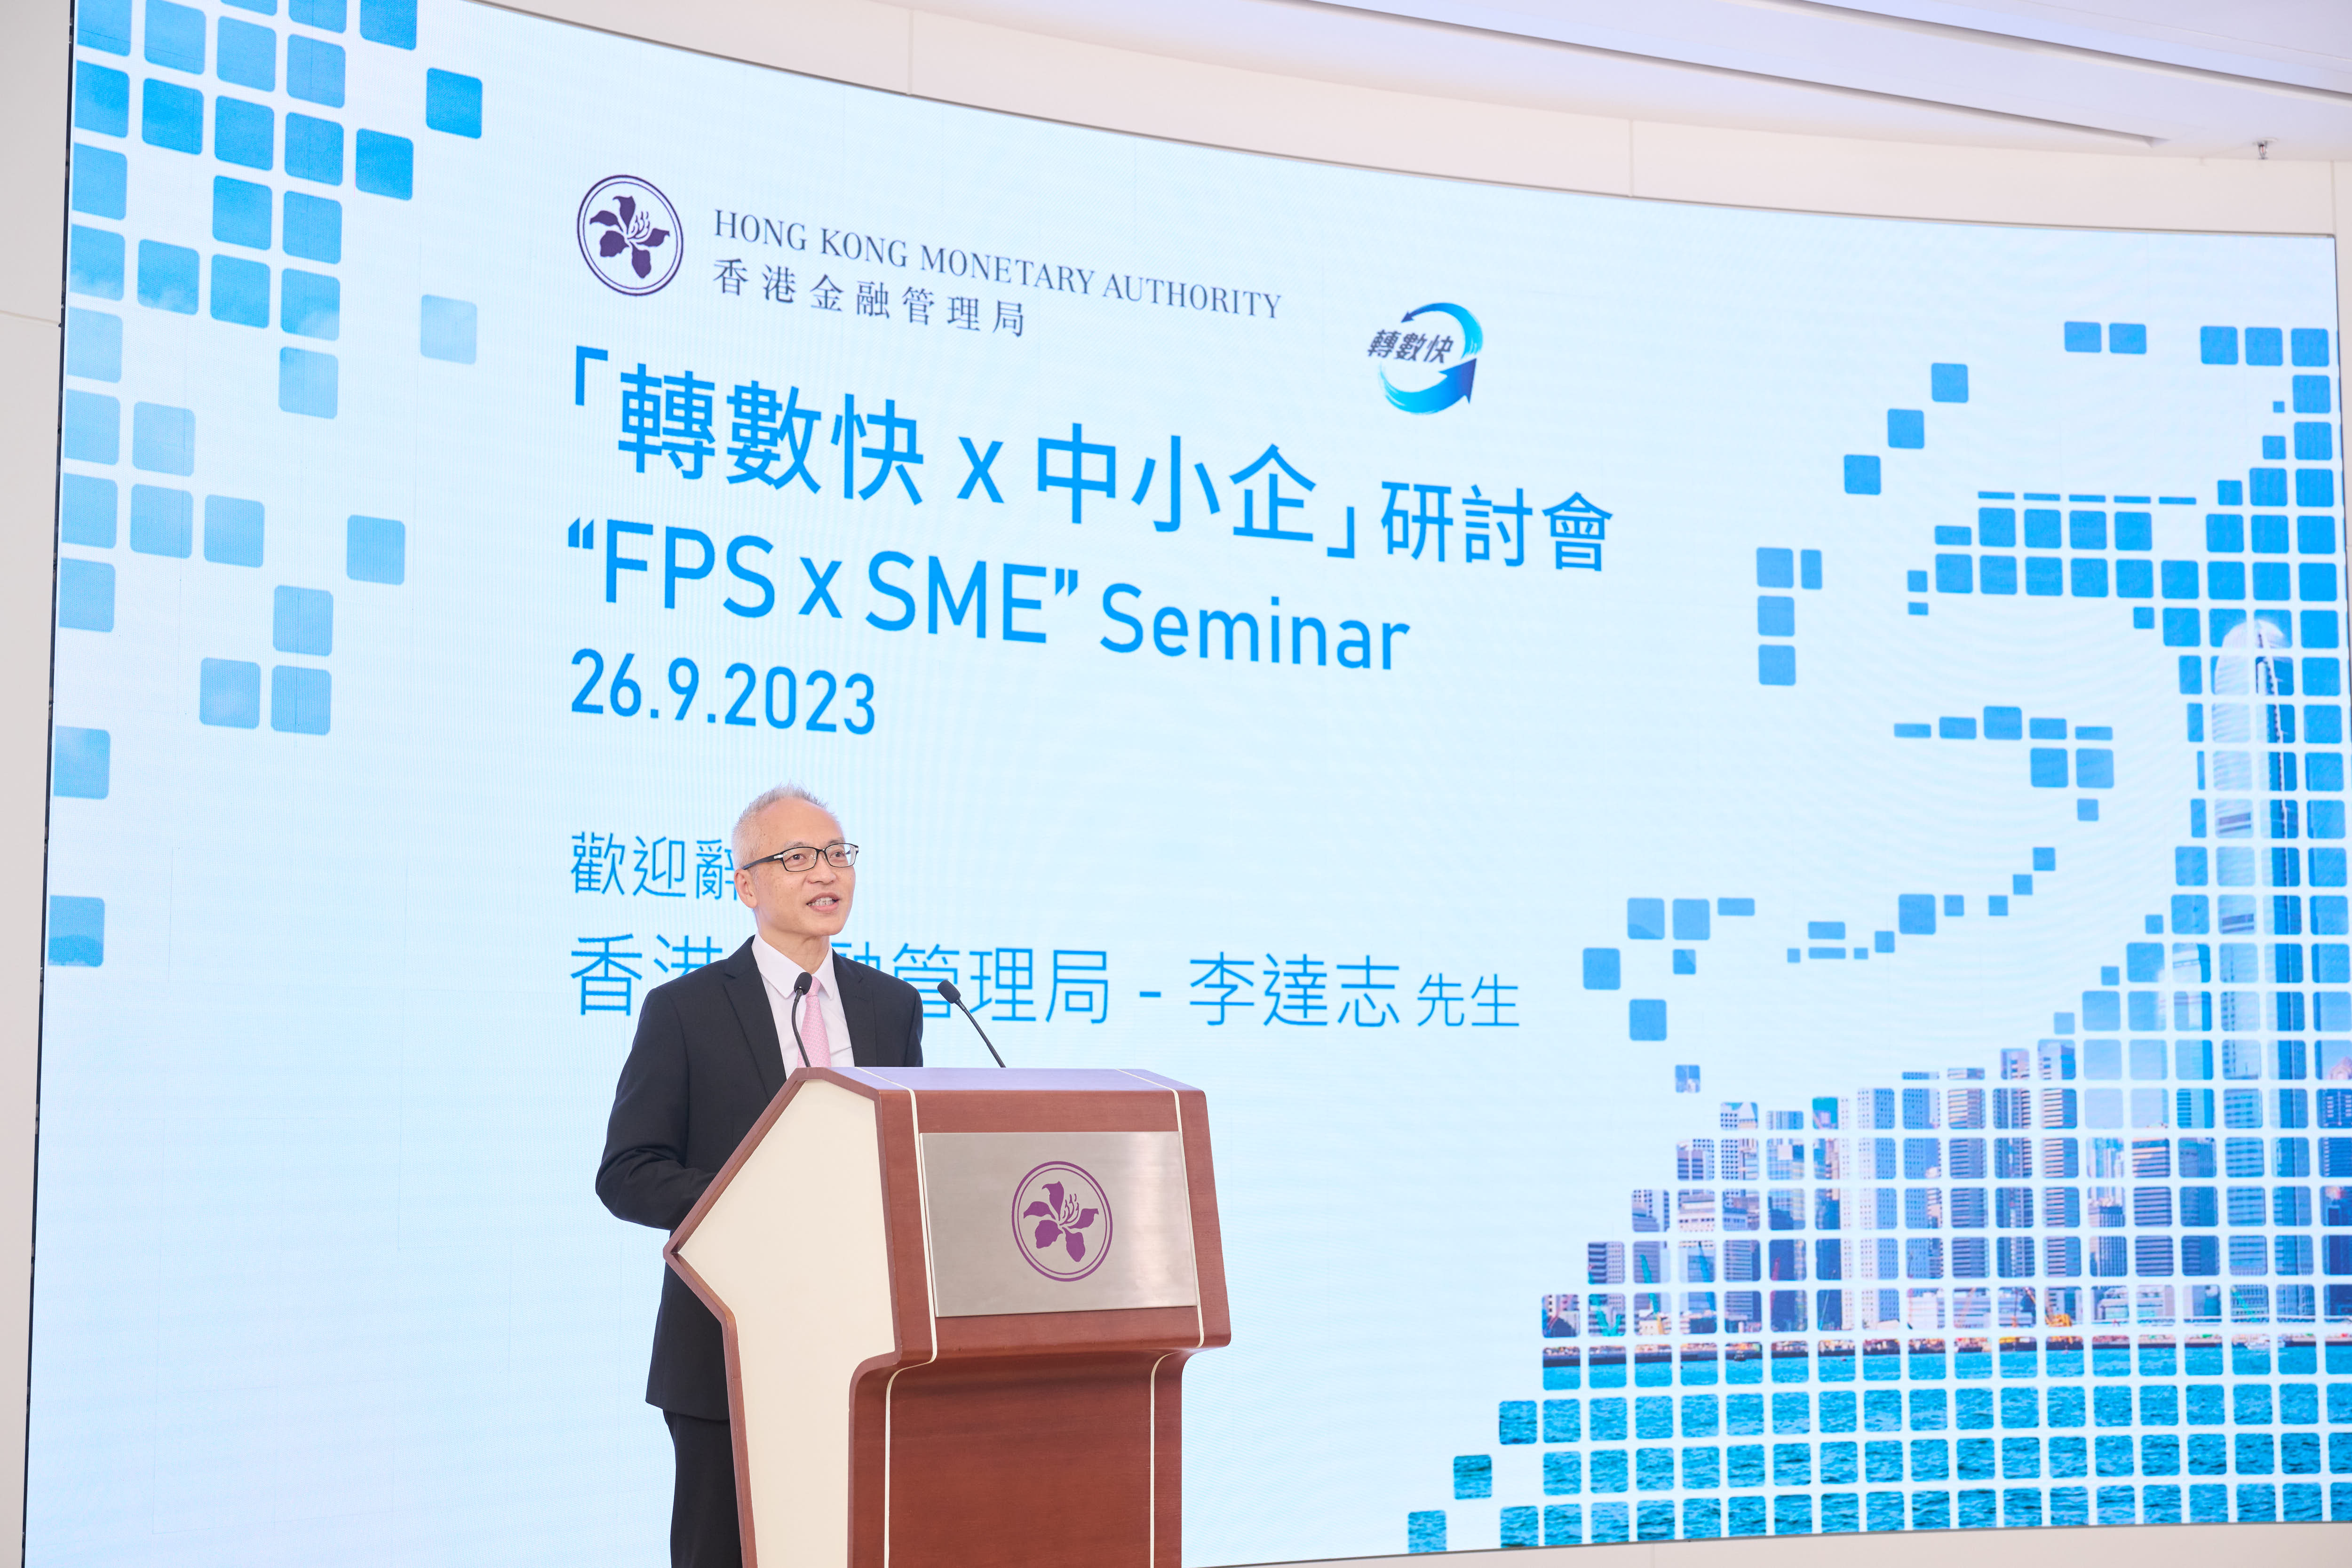 香港金融管理局副總裁李達志在「轉數快x中小企」研討會上致歡迎辭。